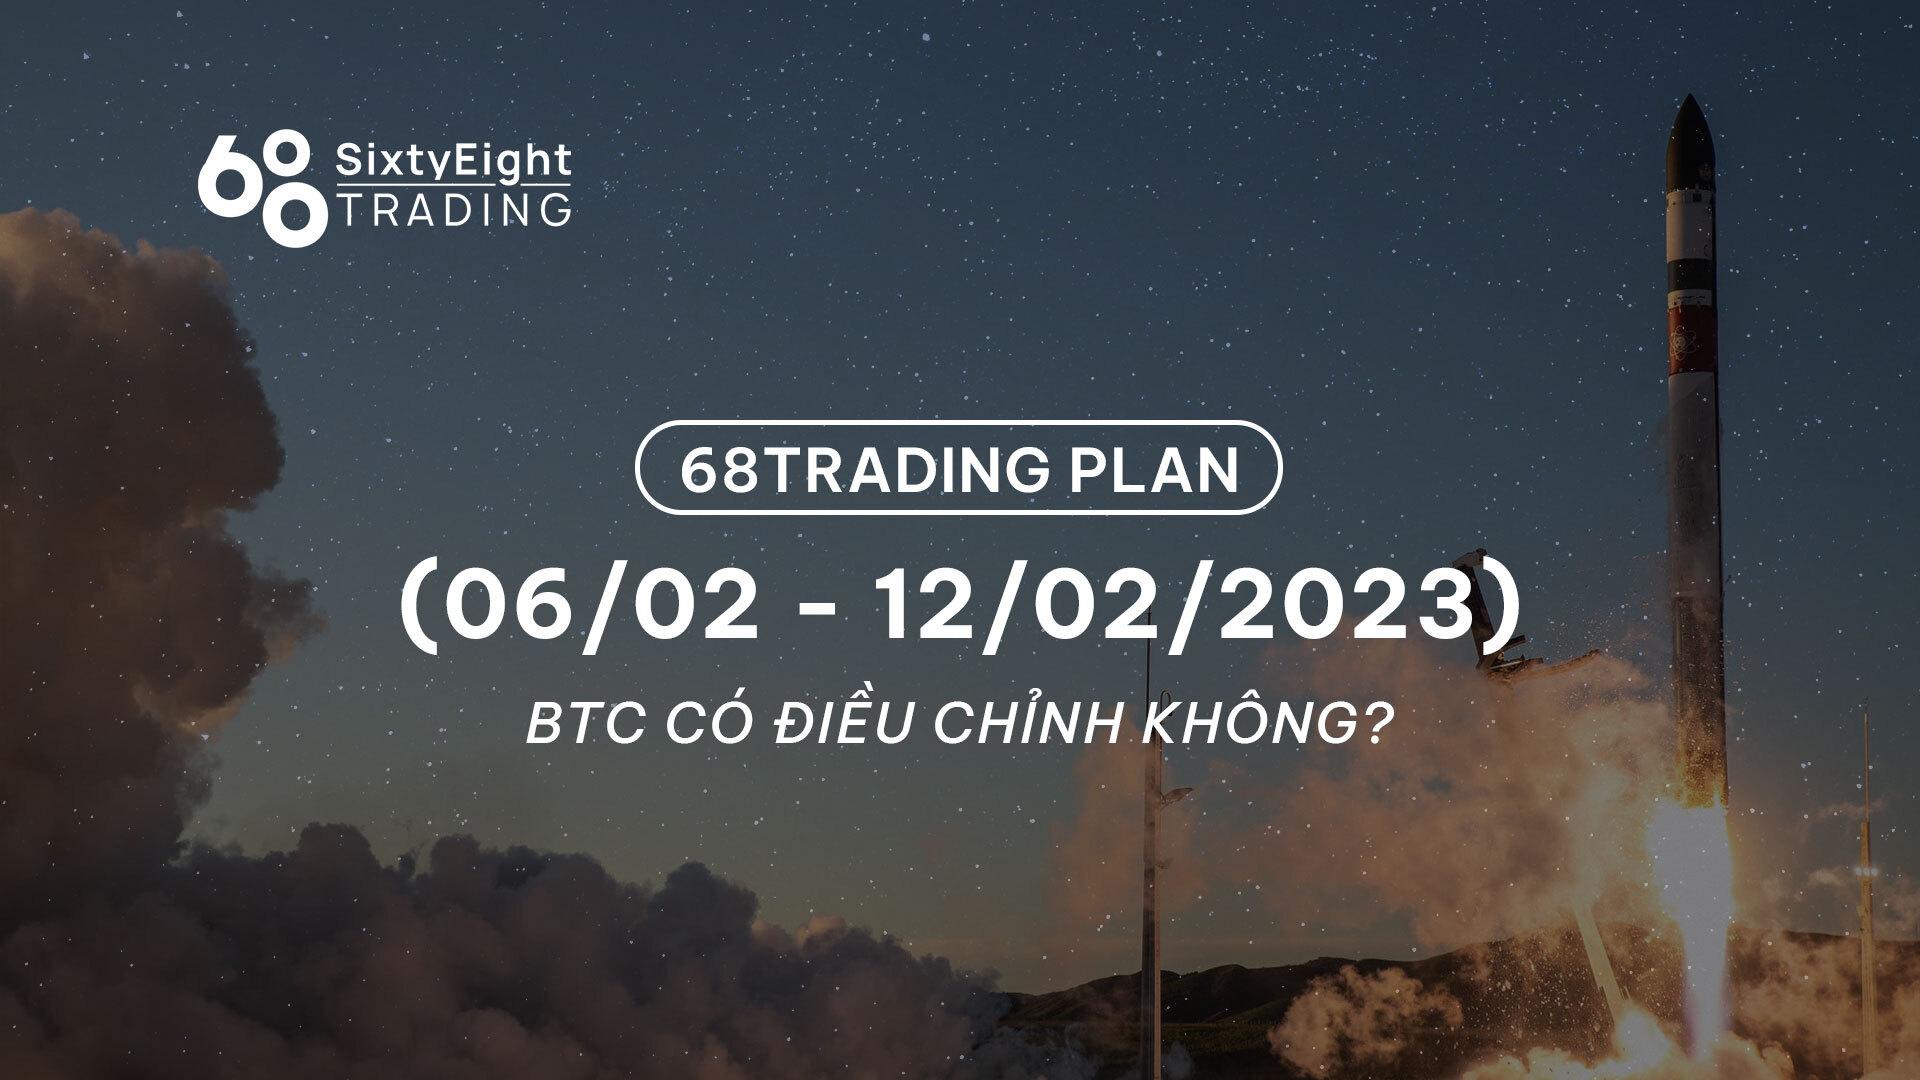 68-trading-plan-0602-12022023-btc-co-dieu-chinh-khong